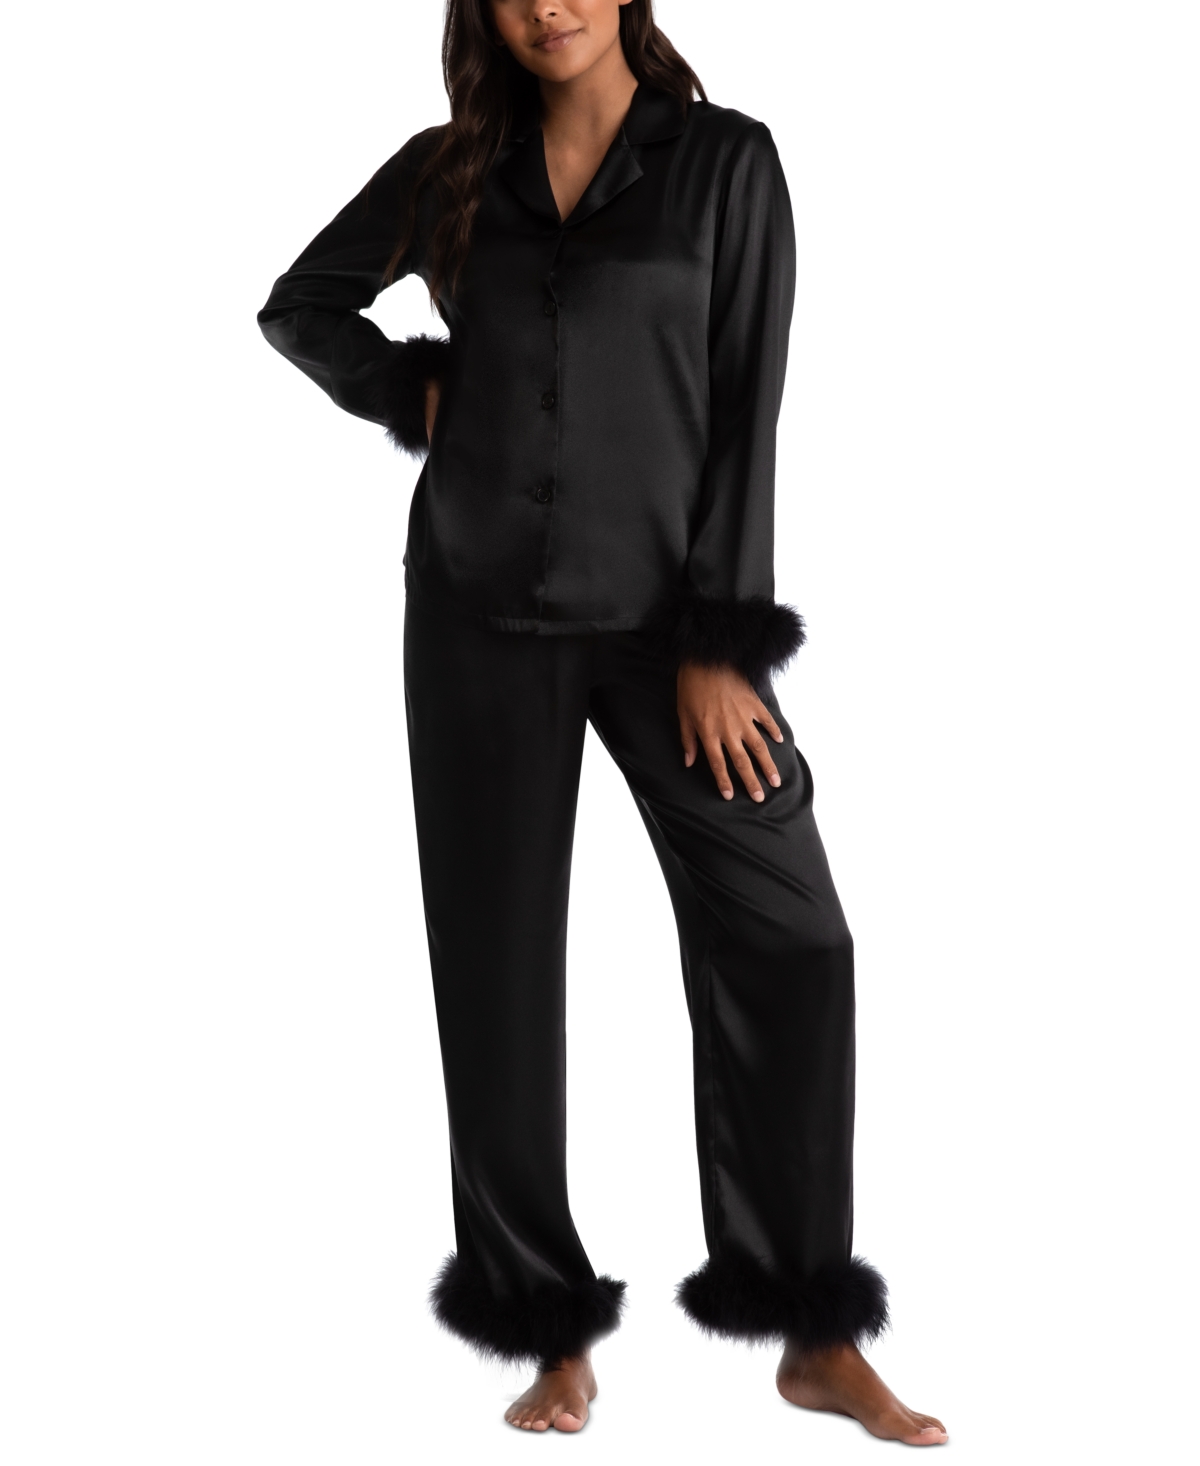 Women's Marabou Feather Satin Pajama Set - Black